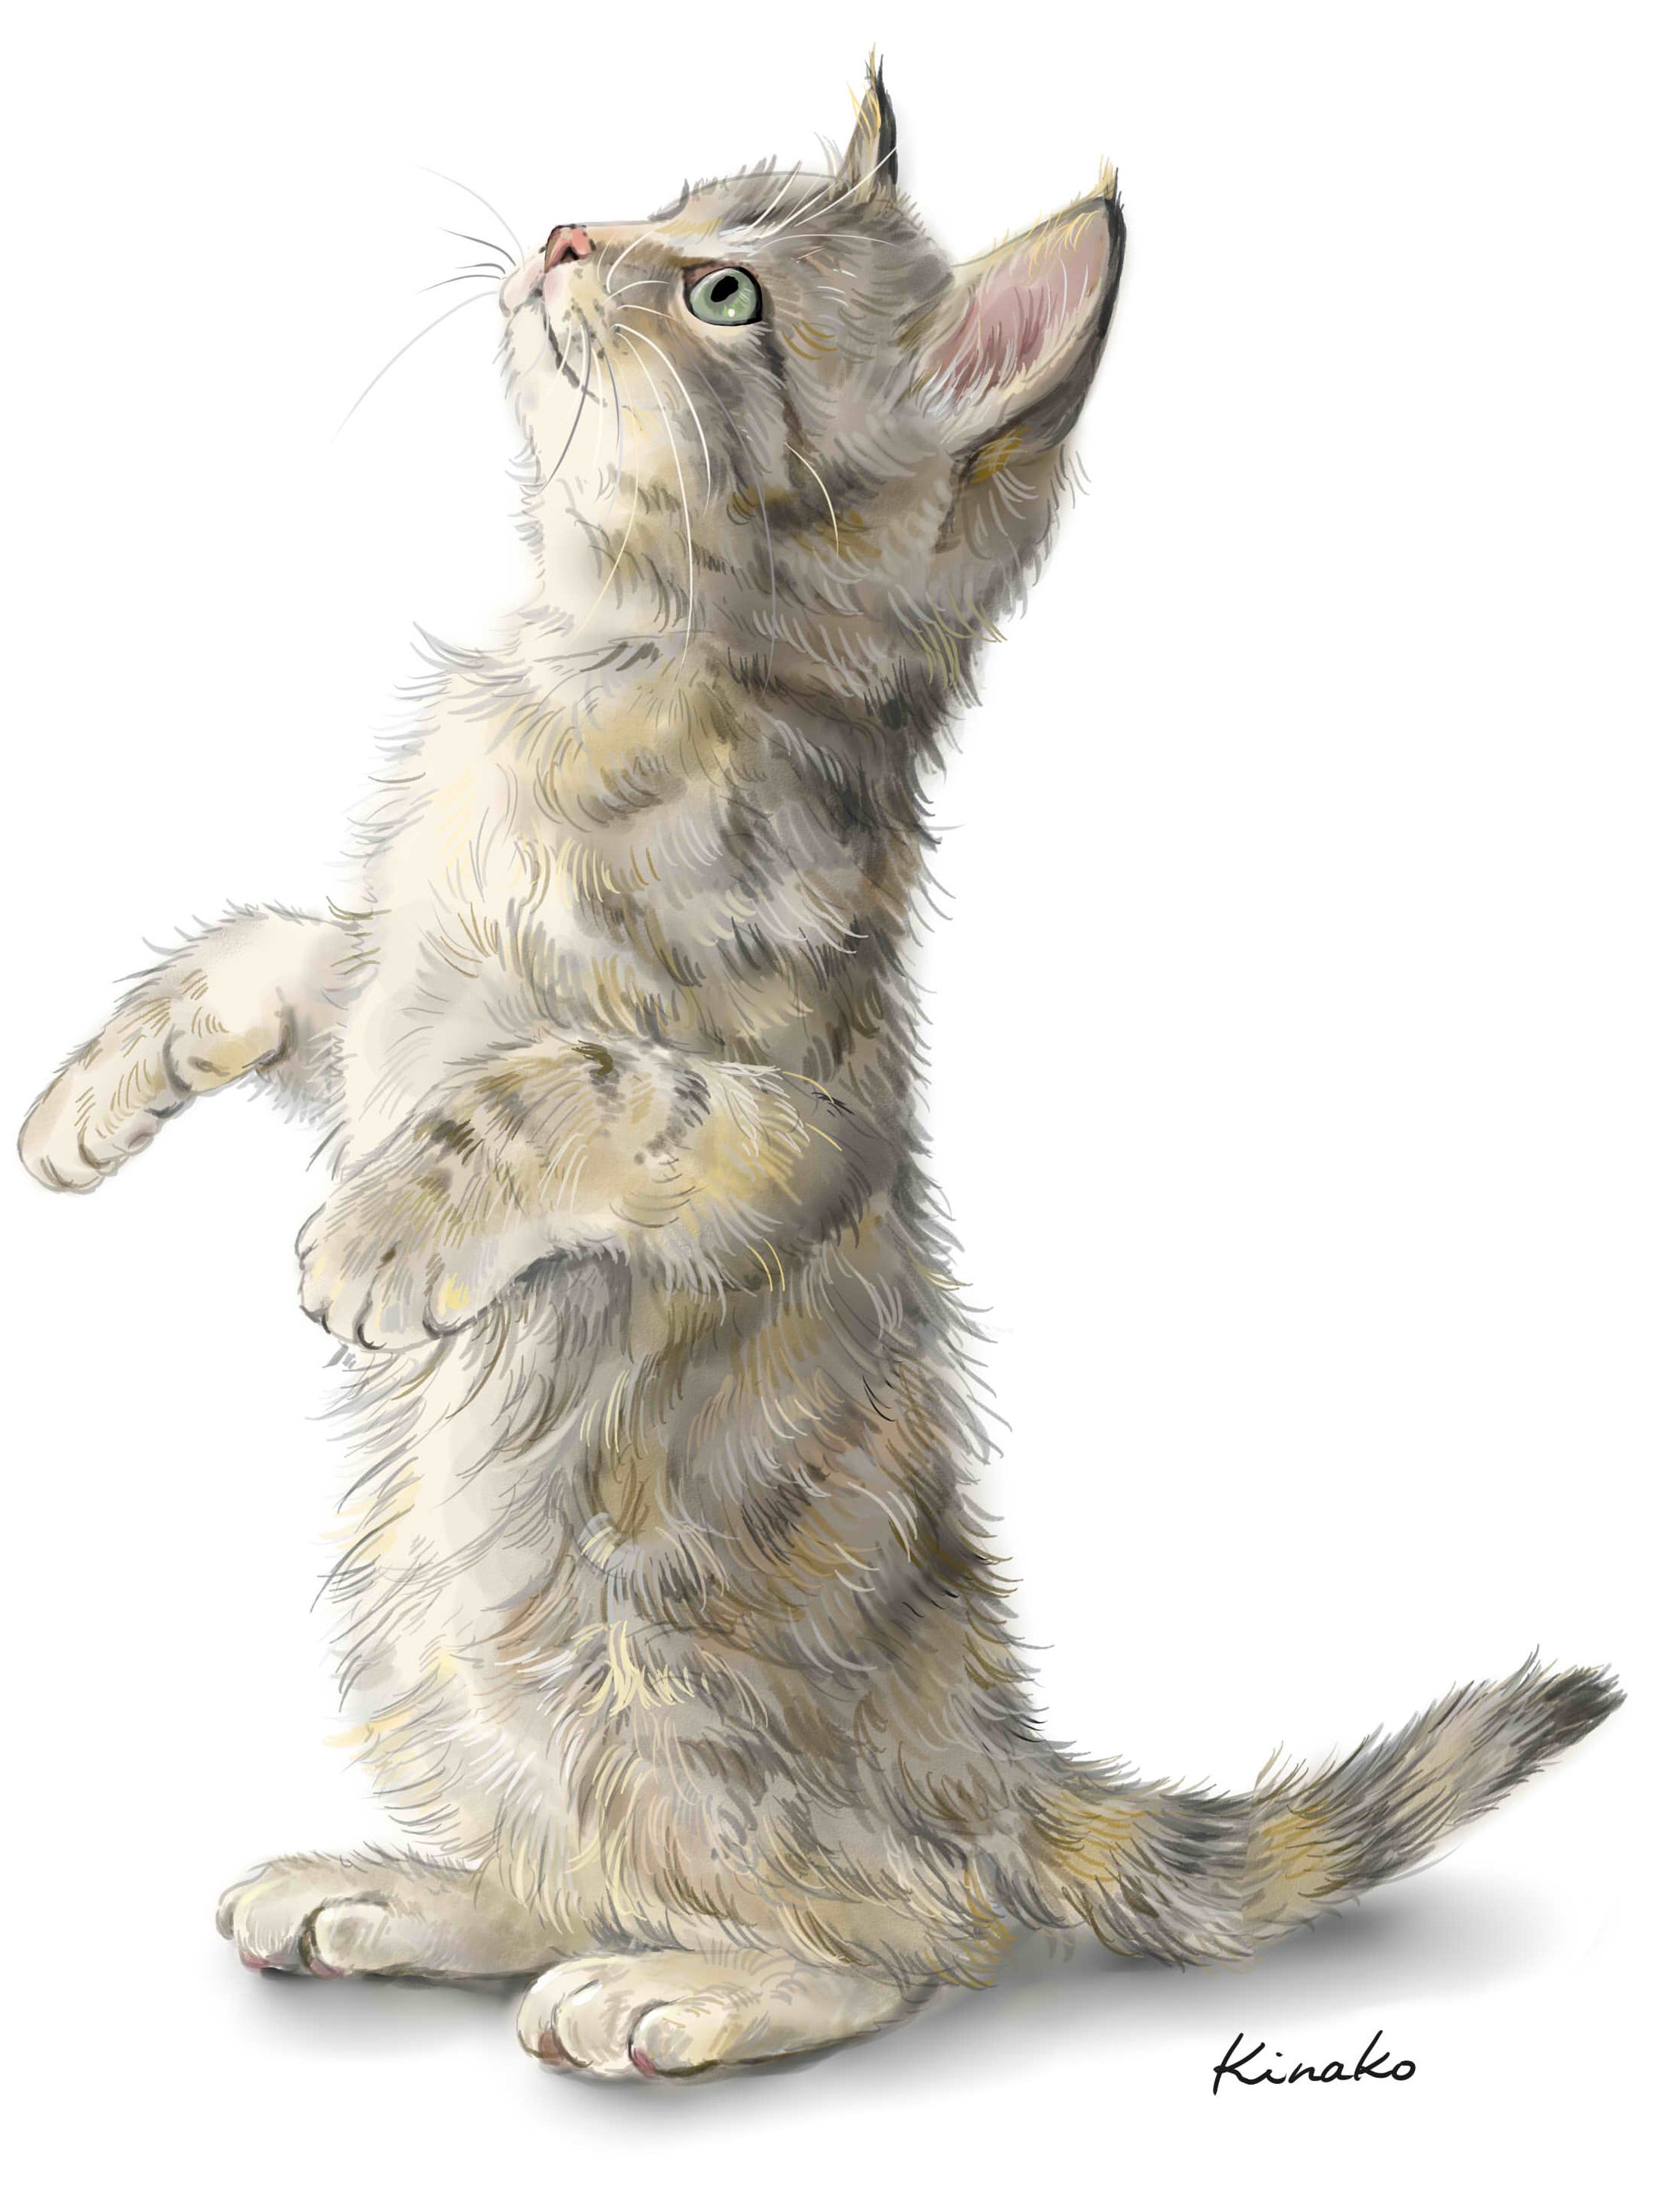 きなこ 猫の絵を描いています 里親会の友人に ジャンプ猫に続いて 立ち上がってじゃれたりしている猫のイラストを頼まれたので これからいくつか描いていきたいと思います このところ このような依頼が入ったので リアルな猫絵ではなく イラストを